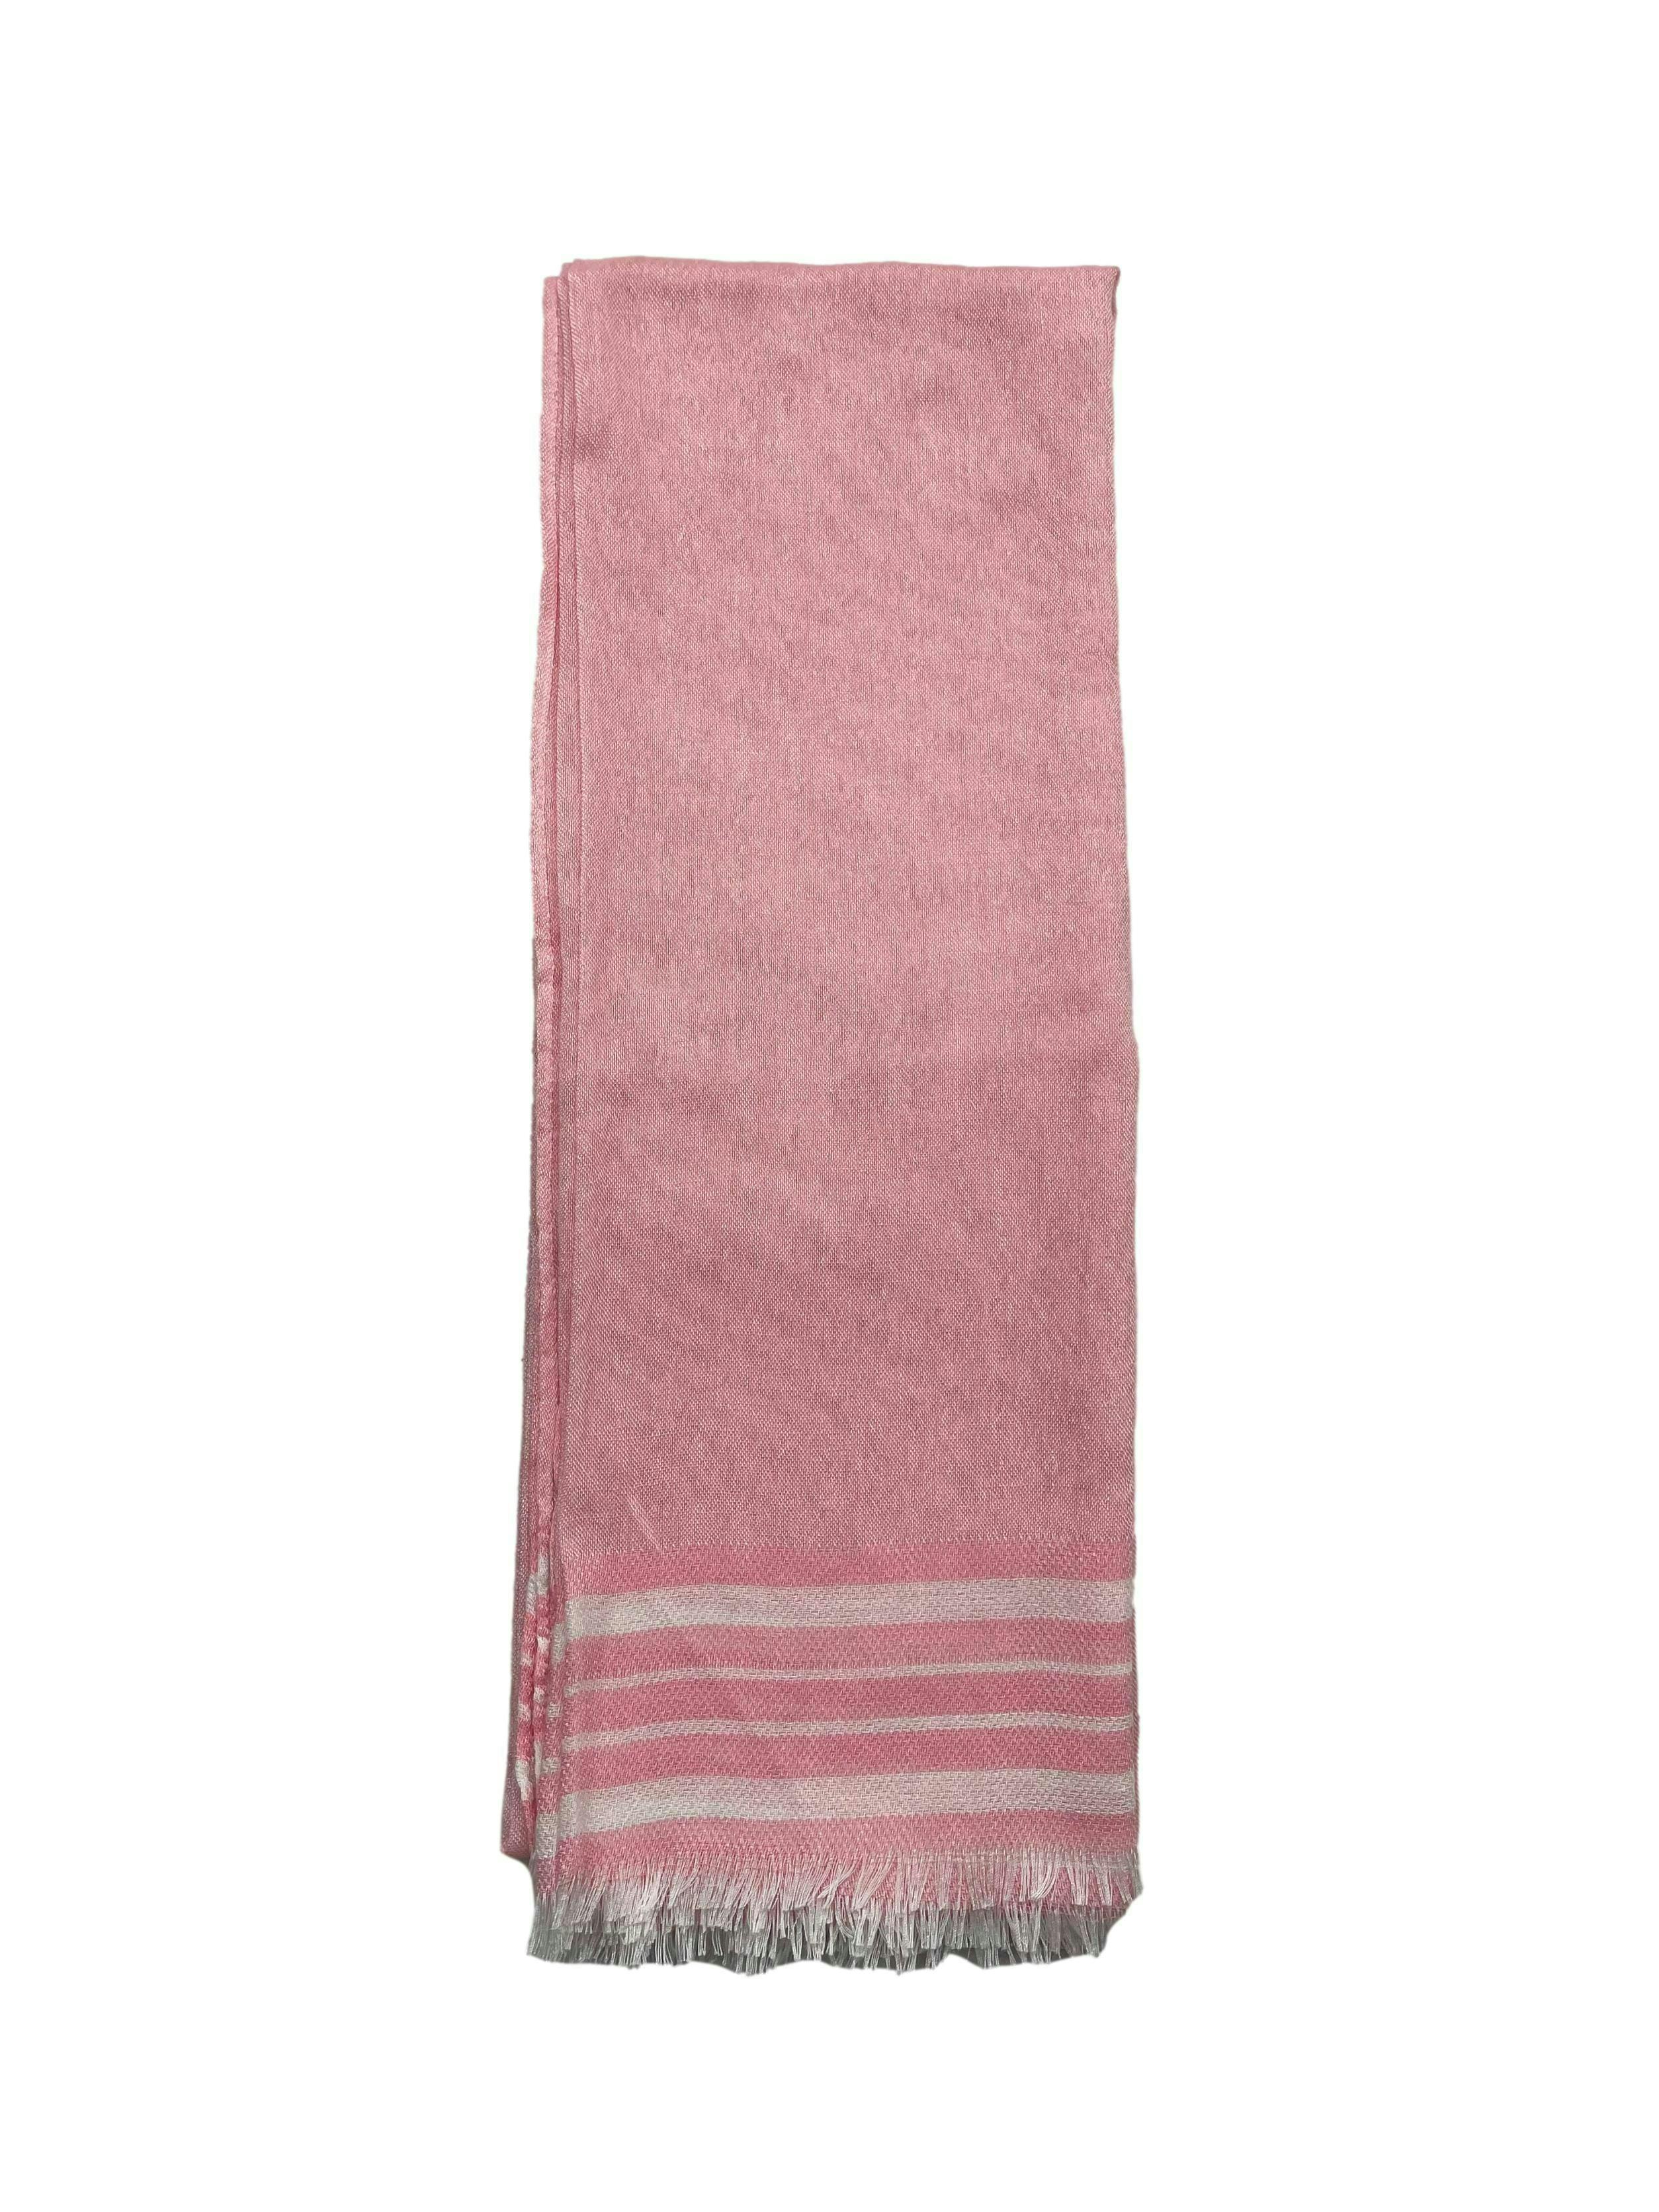 Pañuelo Blu accesories color rosa chicle con lineas blancas y deshilachado en extremos. Medidas 70x200cm.